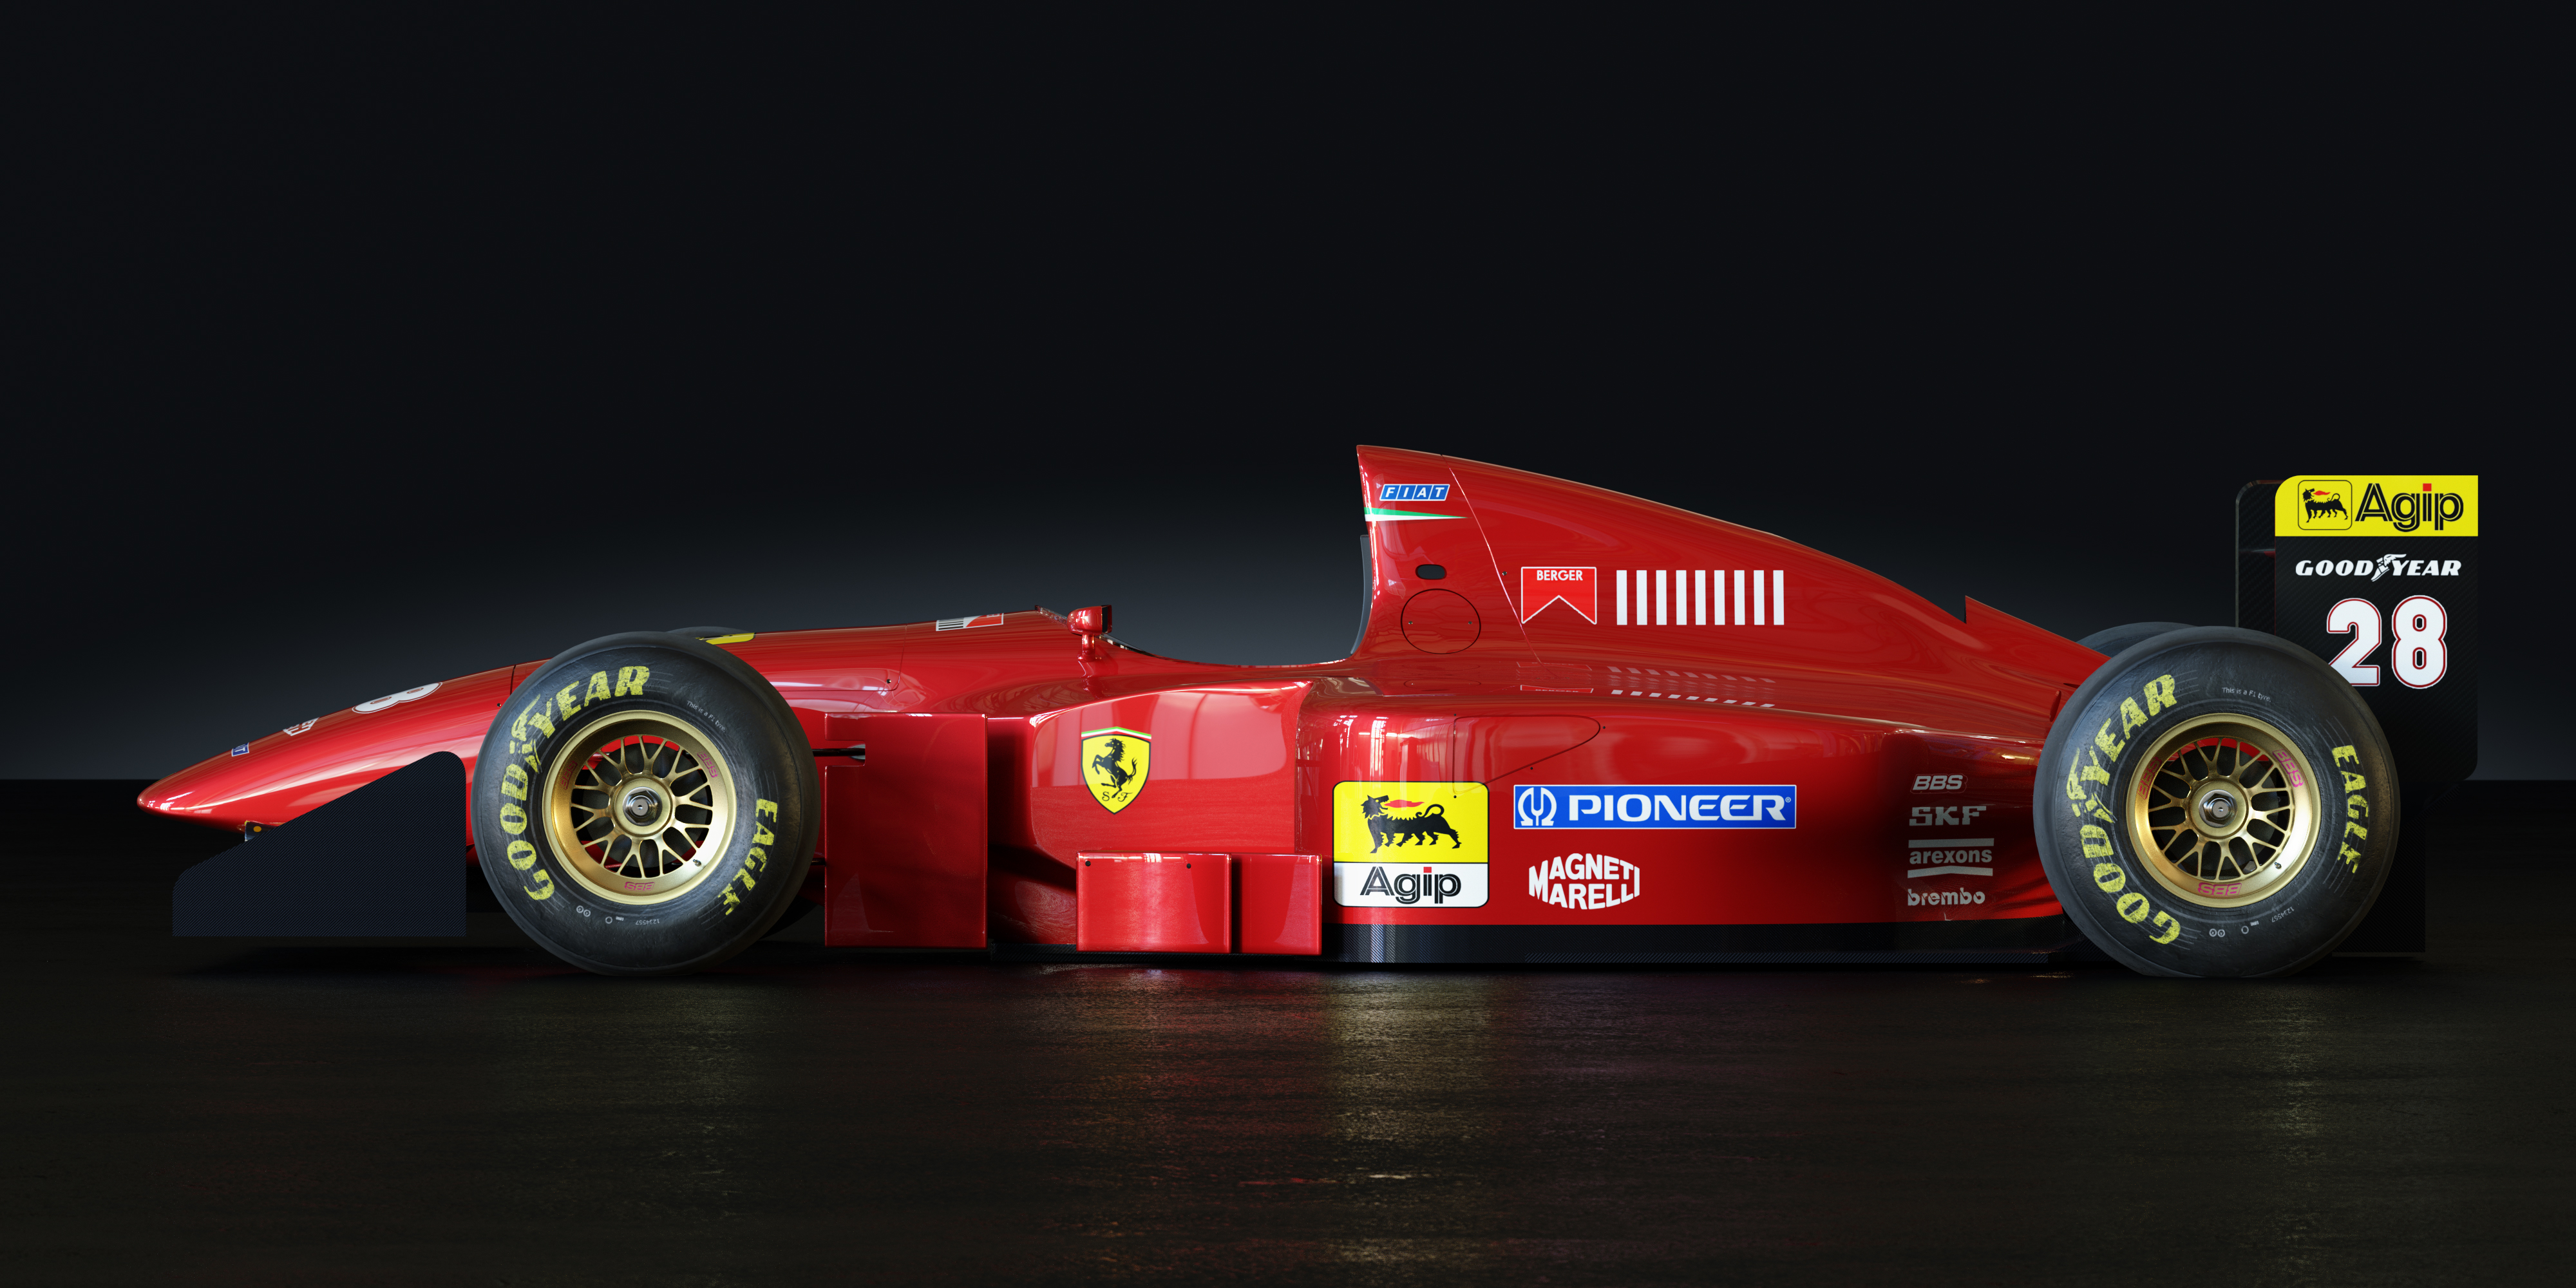 Rapido ferrari. Ferrari 412 t1b. Феррари f1 412 t1. Ferrari 412 т1. Ferrari f1 1994.